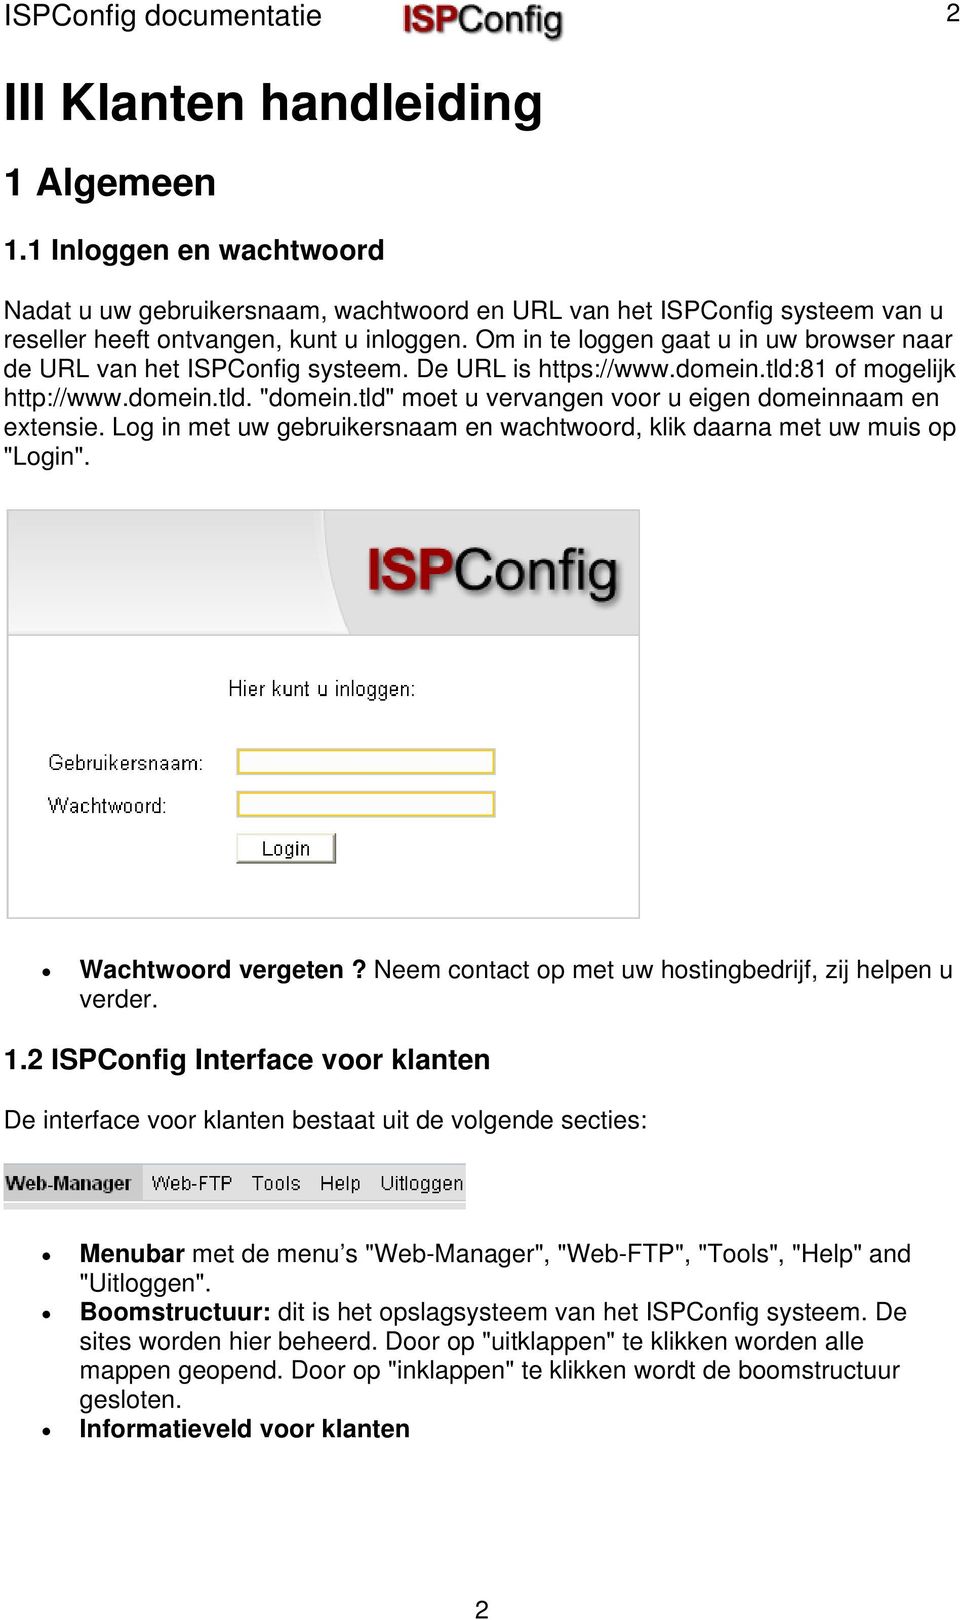 Om in te loggen gaat u in uw browser naar de URL van het ISPConfig systeem. De URL is https://www.domein.tld:81 of mogelijk http://www.domein.tld. "domein.